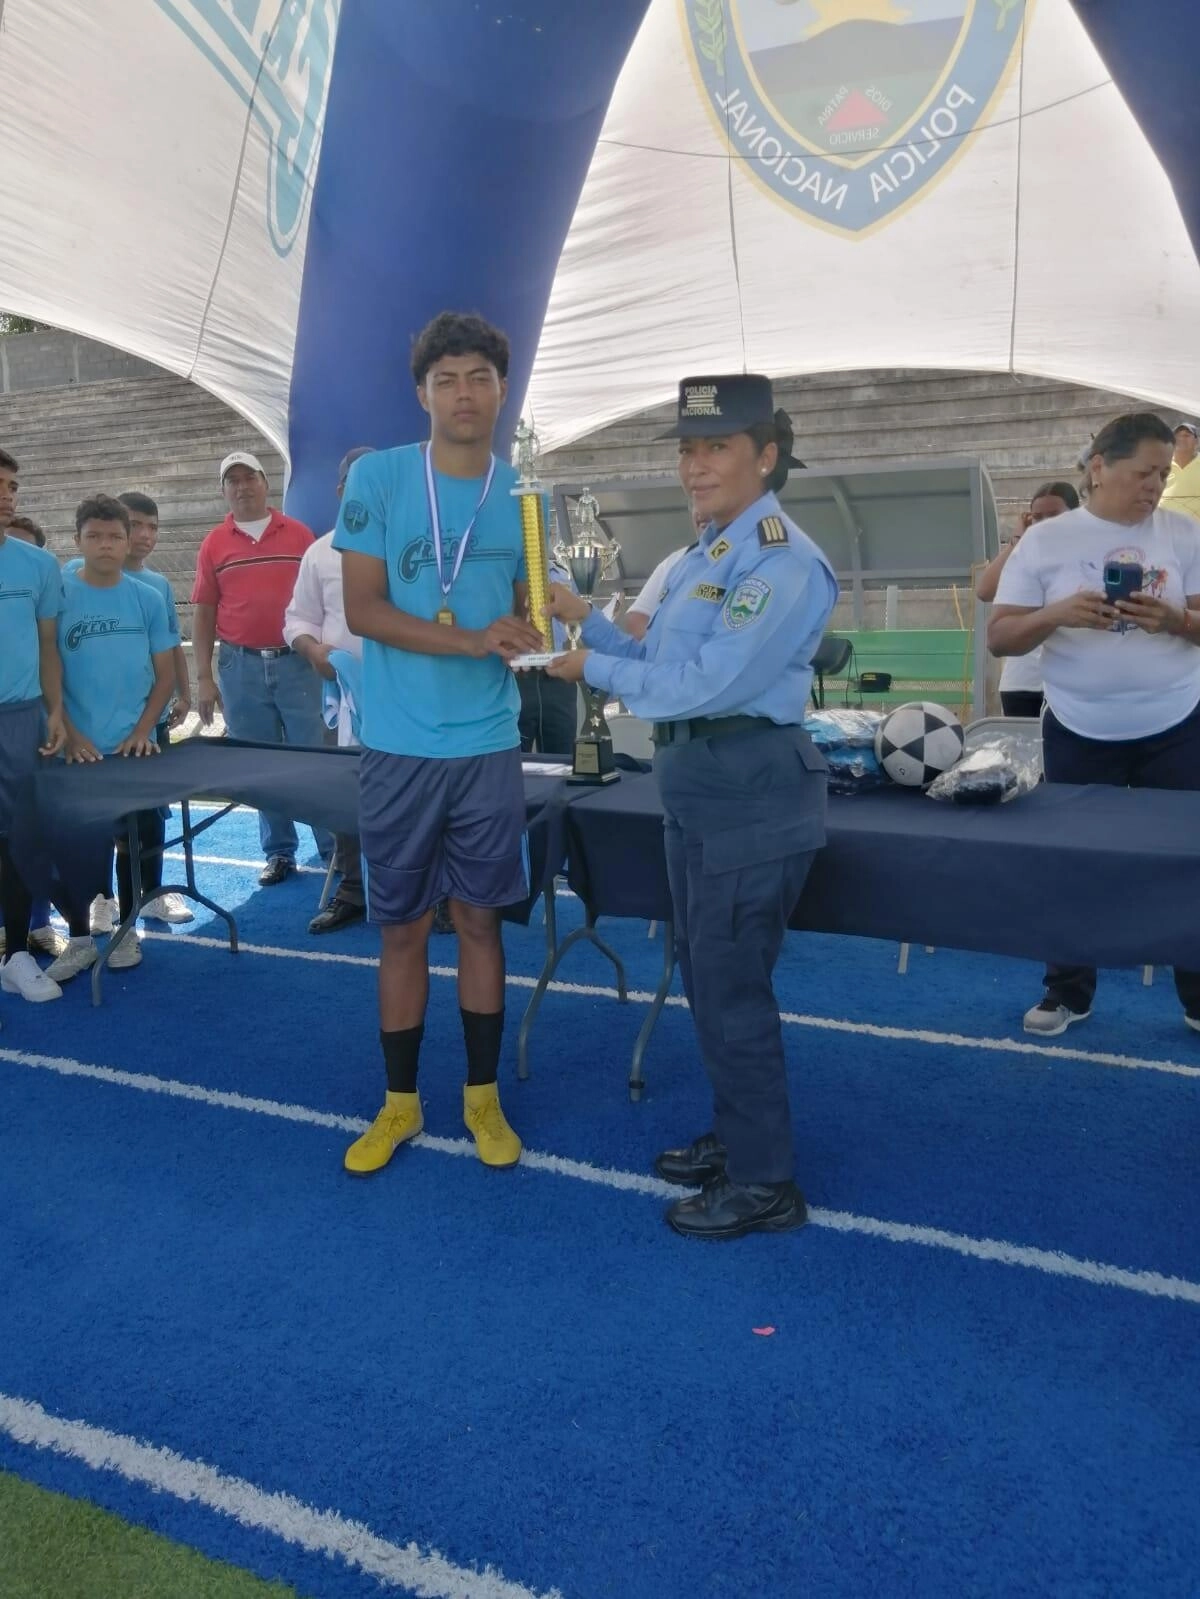 Instructores Great Realizan Campeonato Deportivo Intercolegial En La Paz04